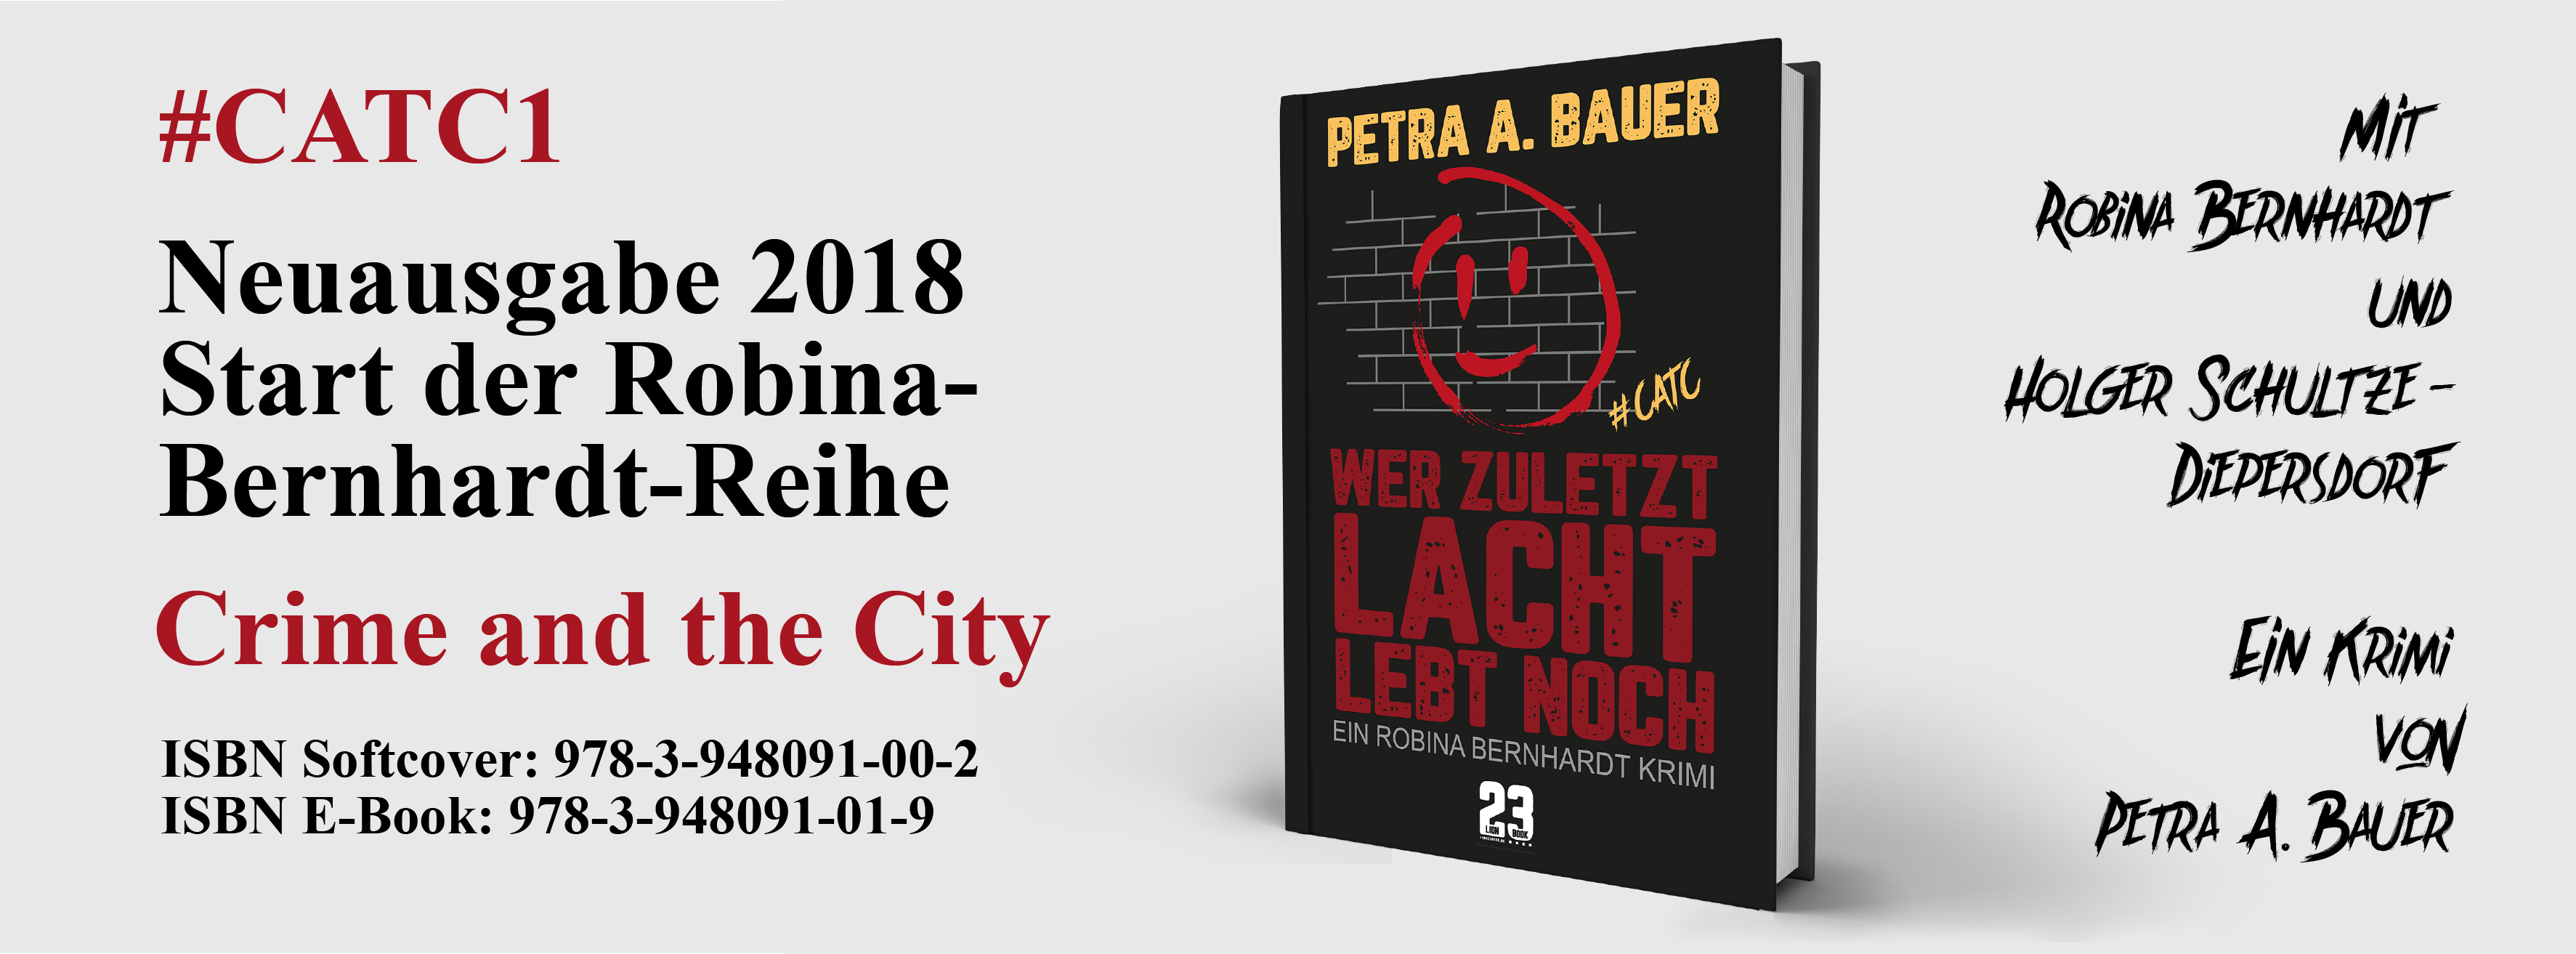 Wer zuletzt lacht, lebt noch von Petra A. Bauer. Überarbeitete Ausgabe 2018